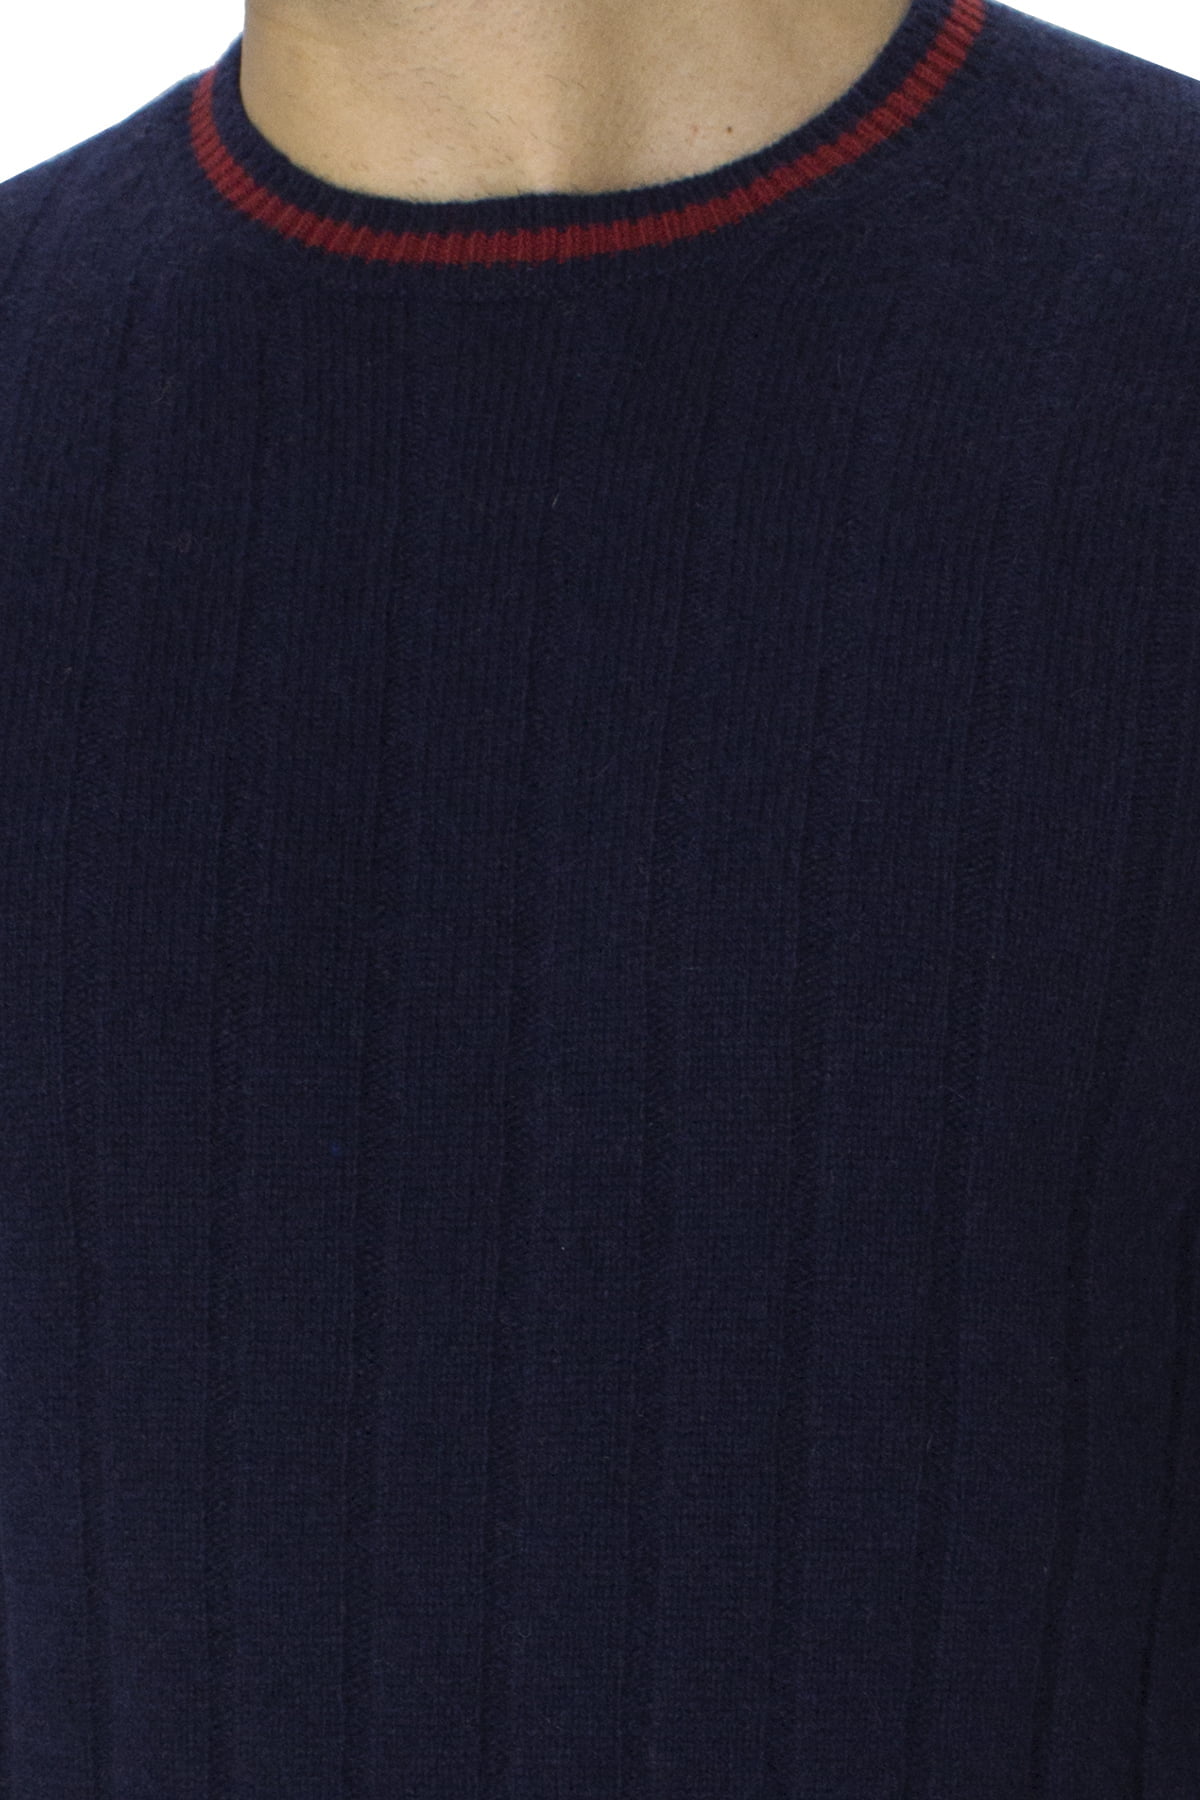 Maglione uomo Girocollo blu a coste in lana merinos con bordini rossi slim fit made in italy